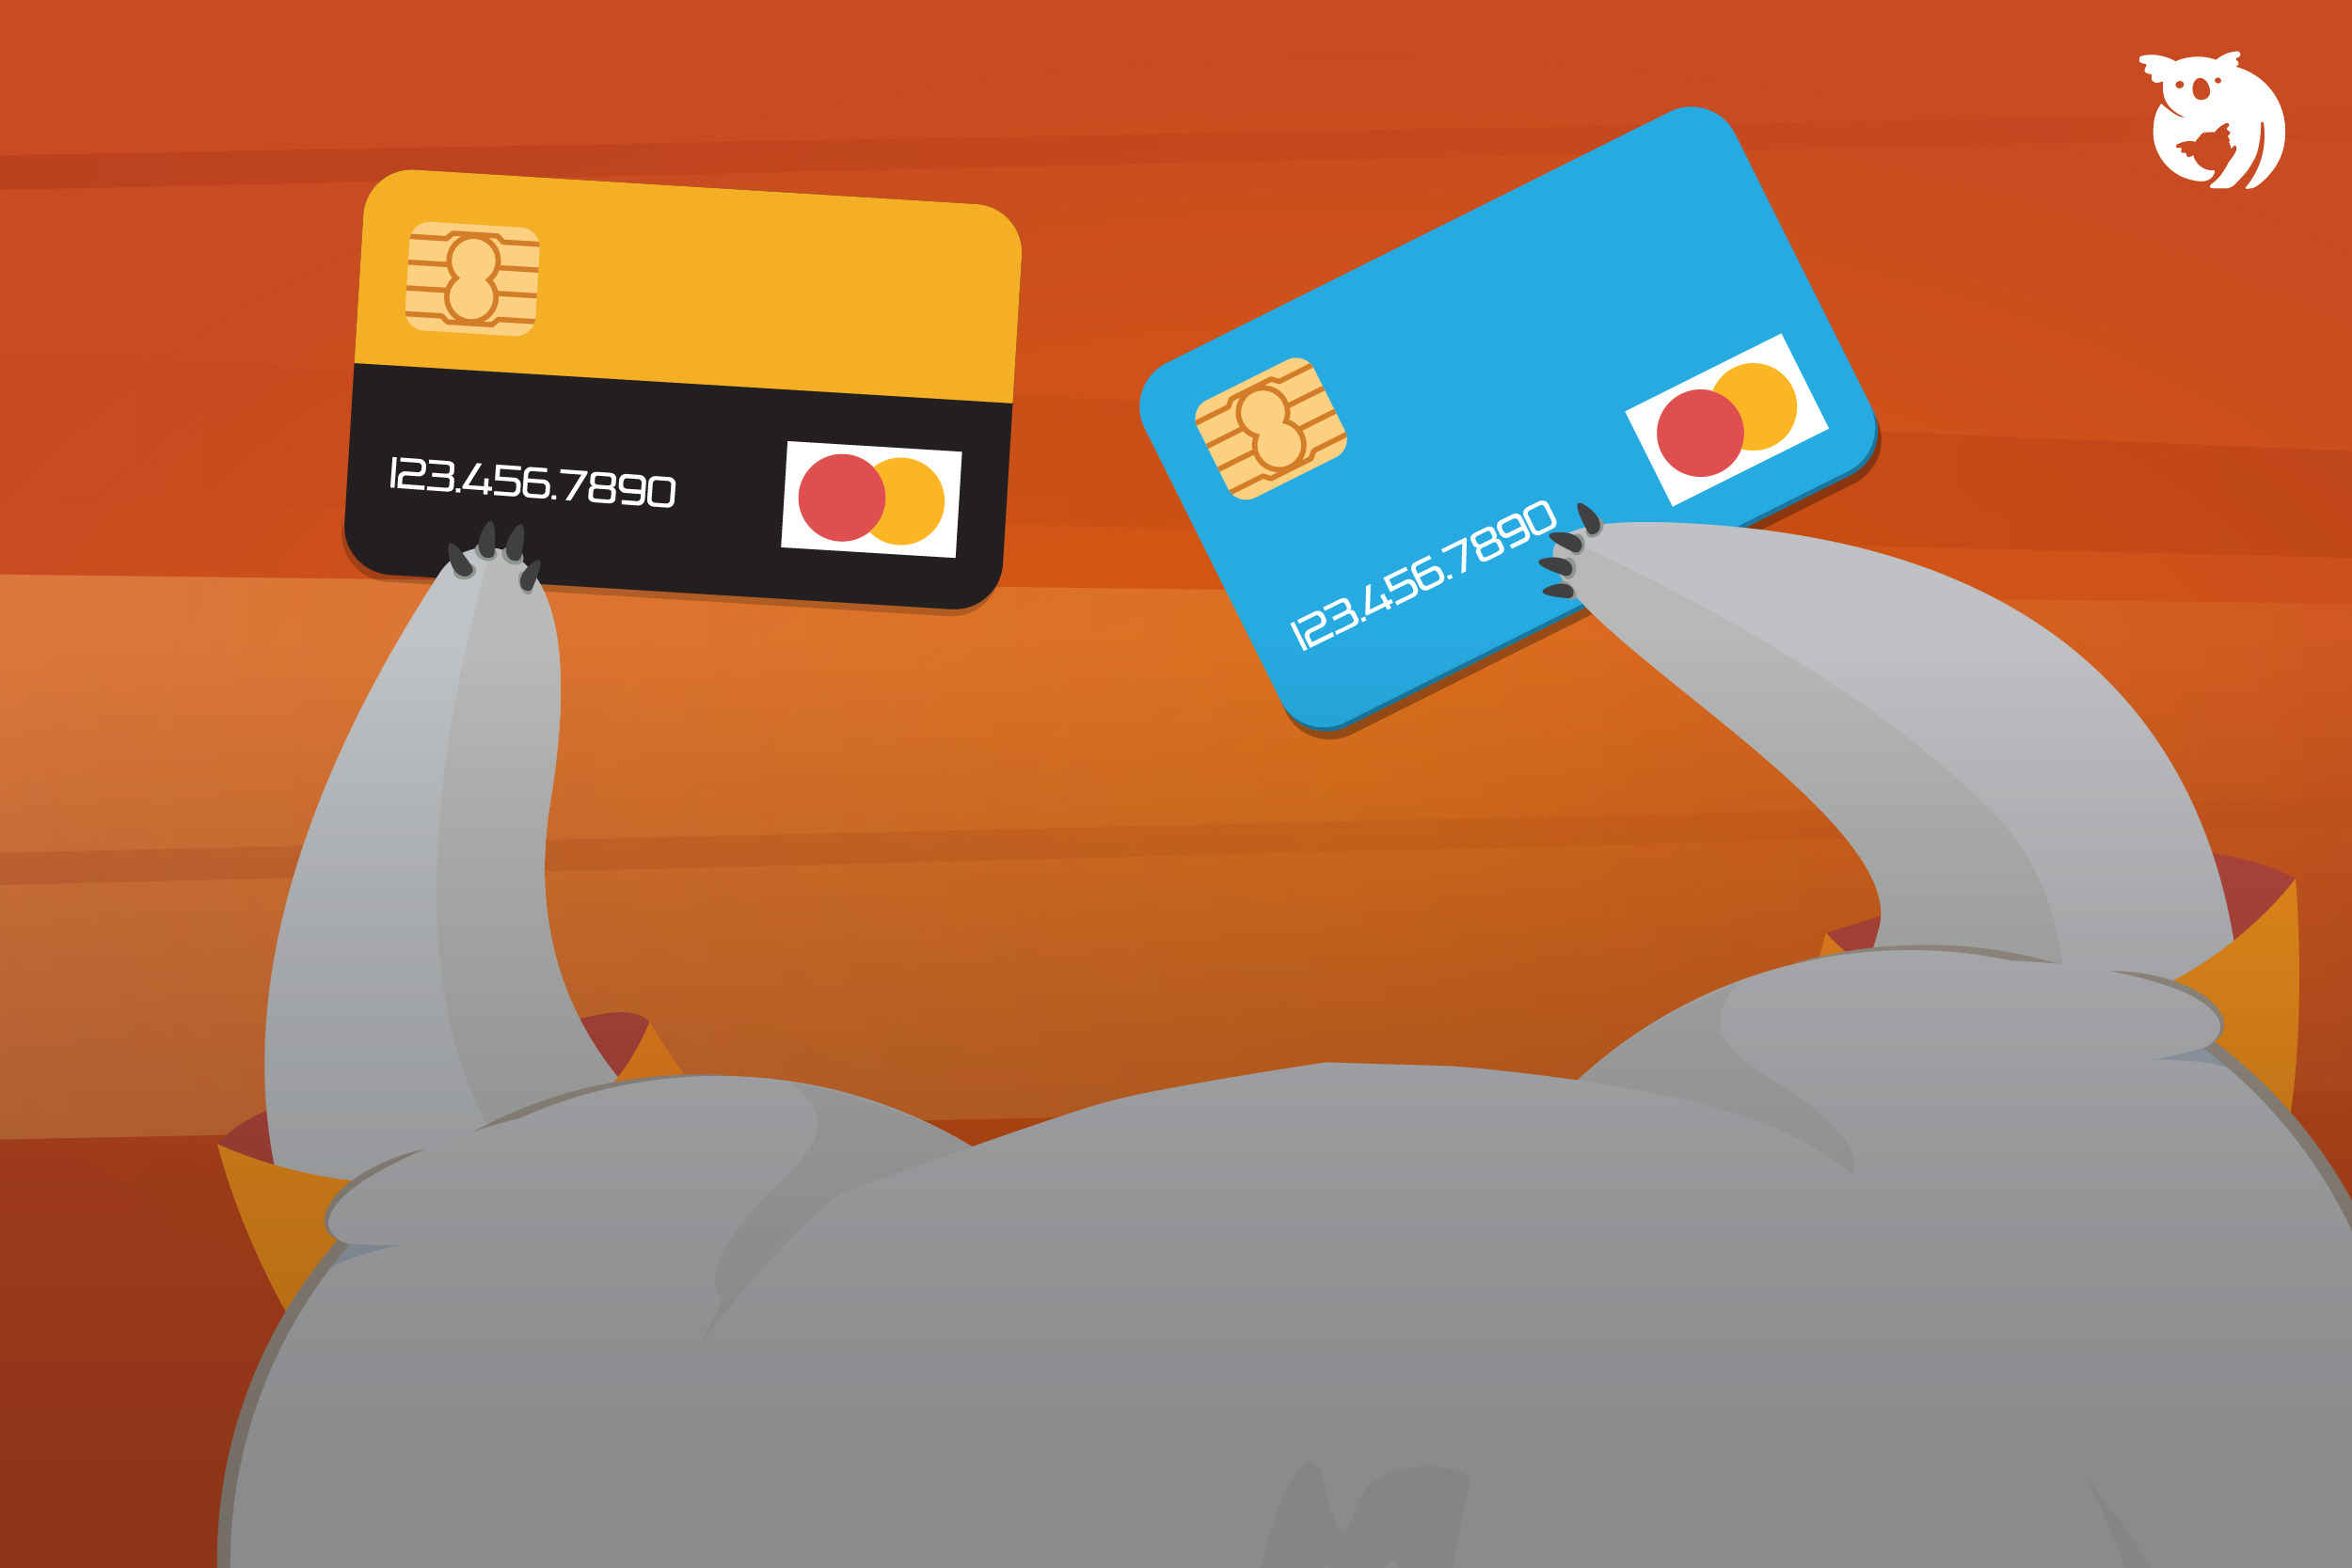 Kelebihan, Keburukan & Cara Guna Kad Kredit dengan Bijak